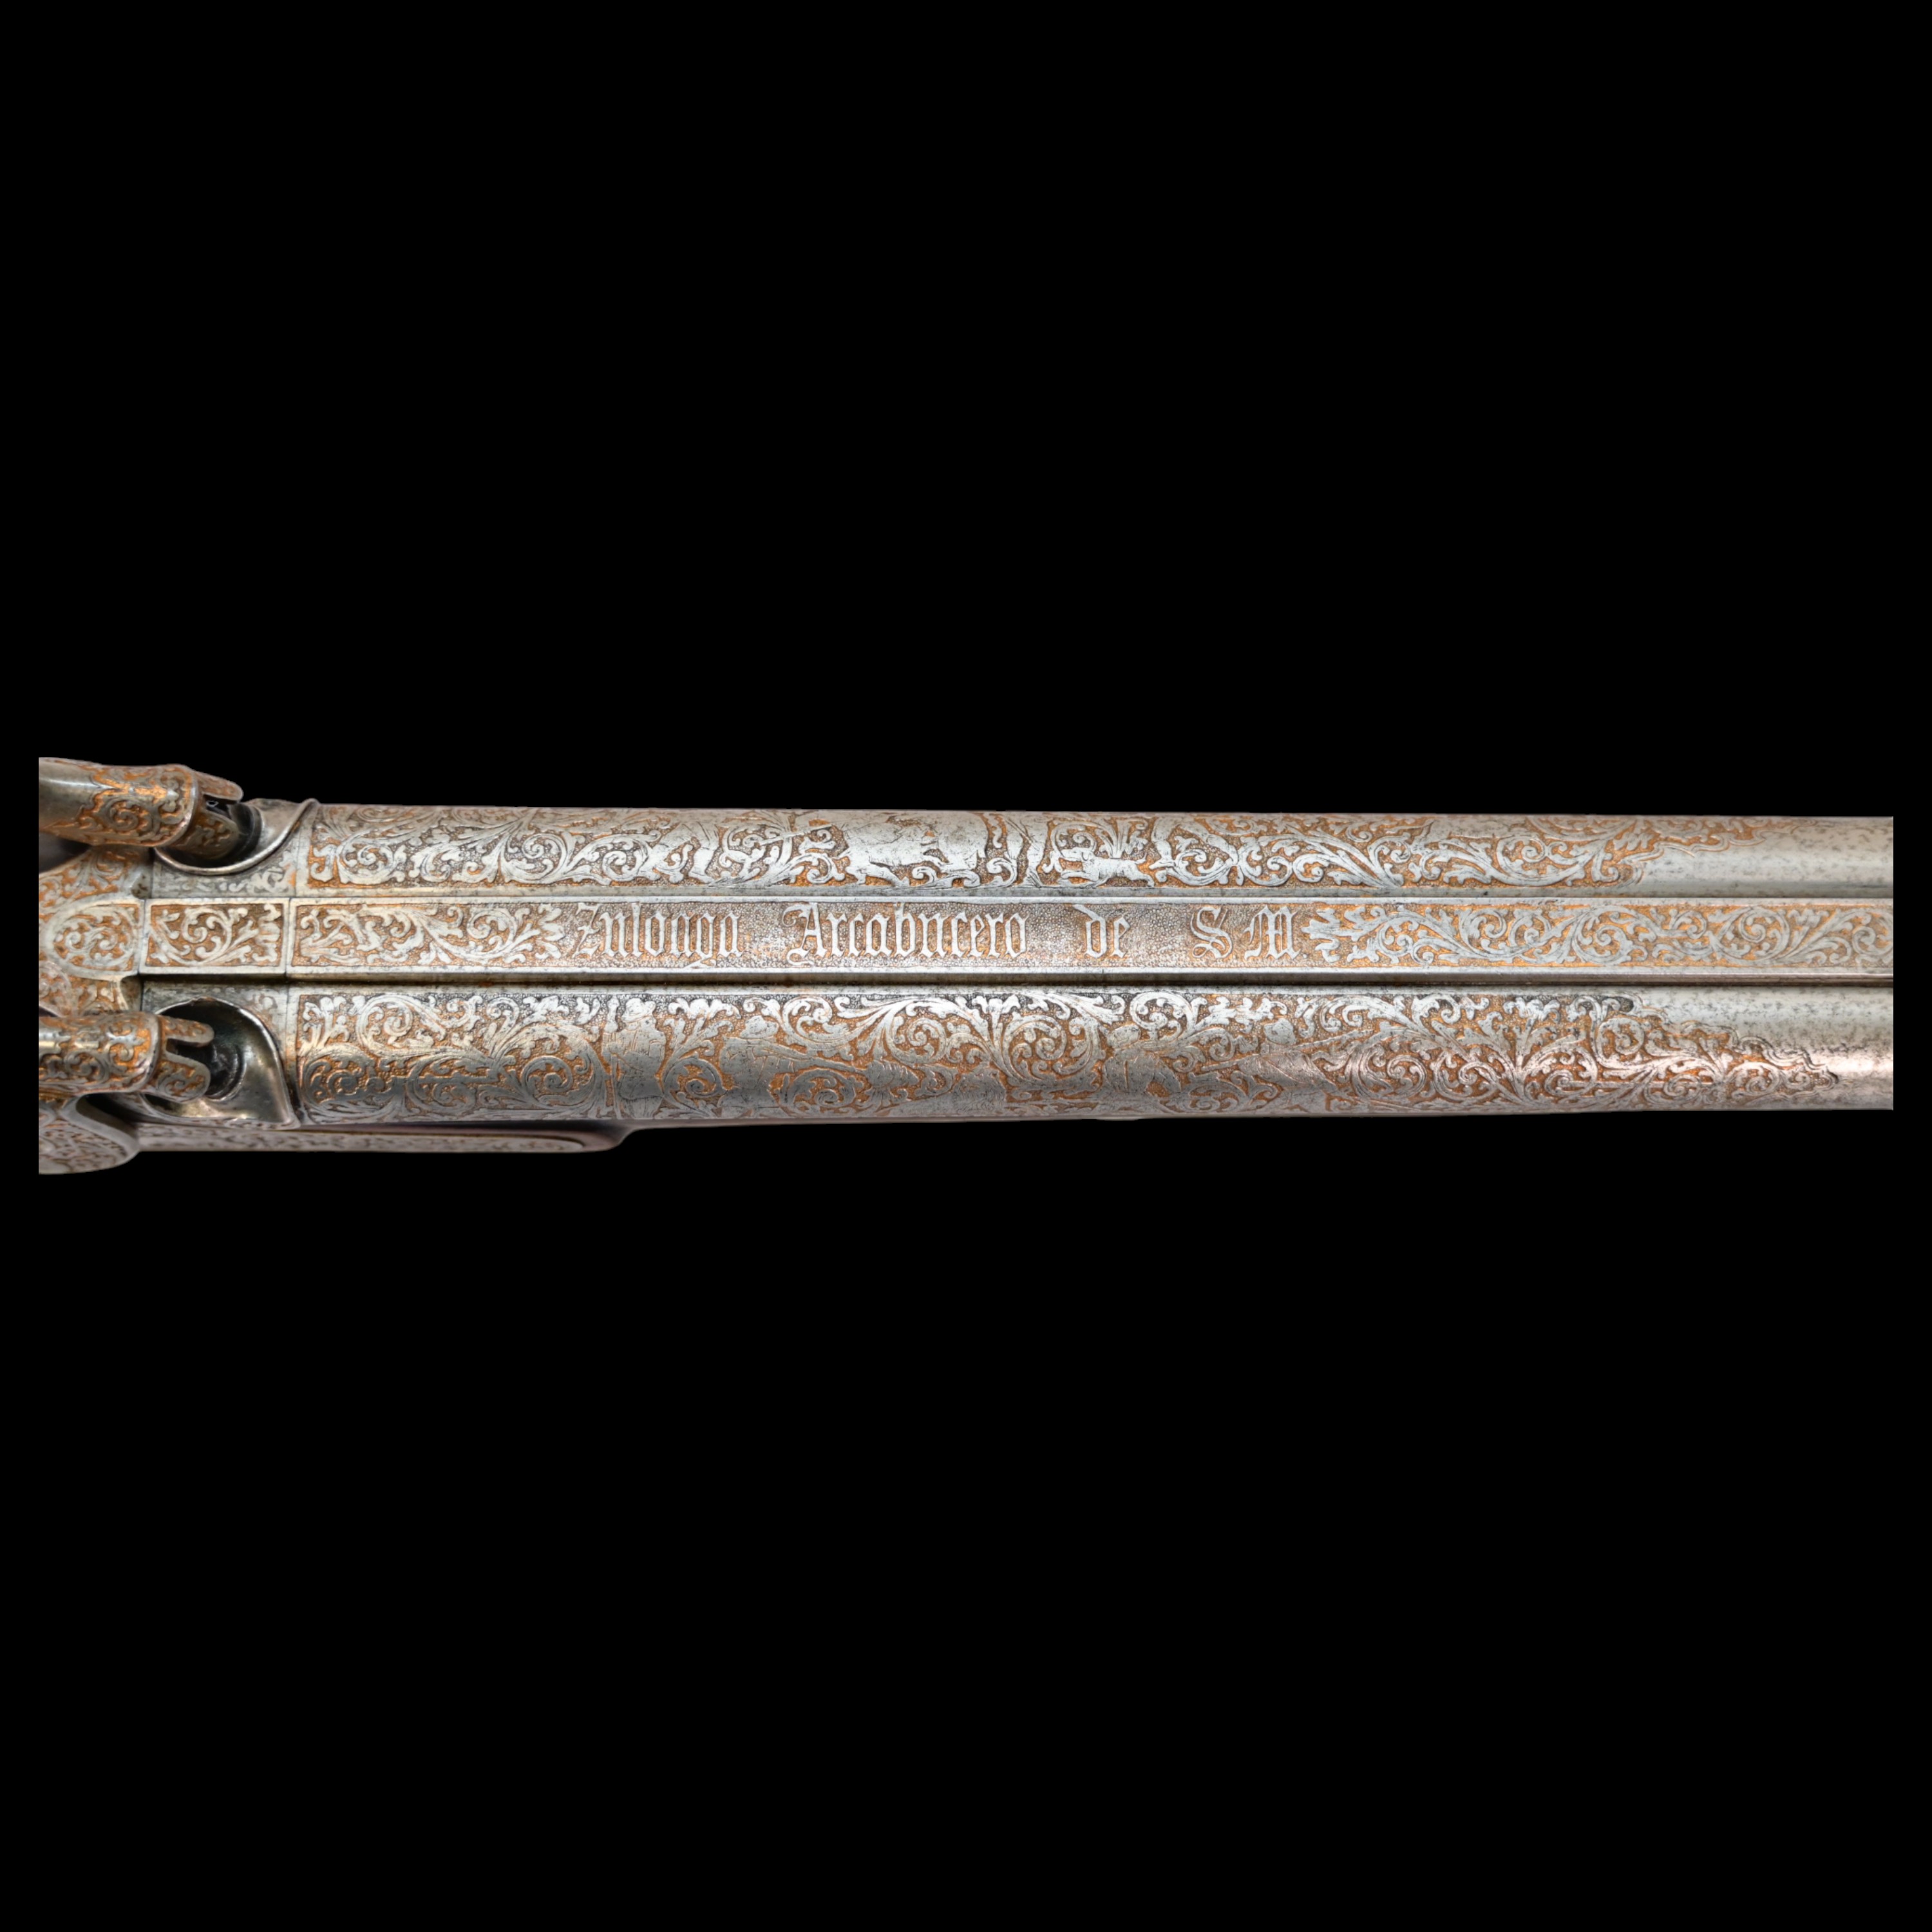 Rare Double-barrel percussion shotgun, Eusebio Zuloaga, royal gunsmith, Spain, mid-19th century. - Image 17 of 26